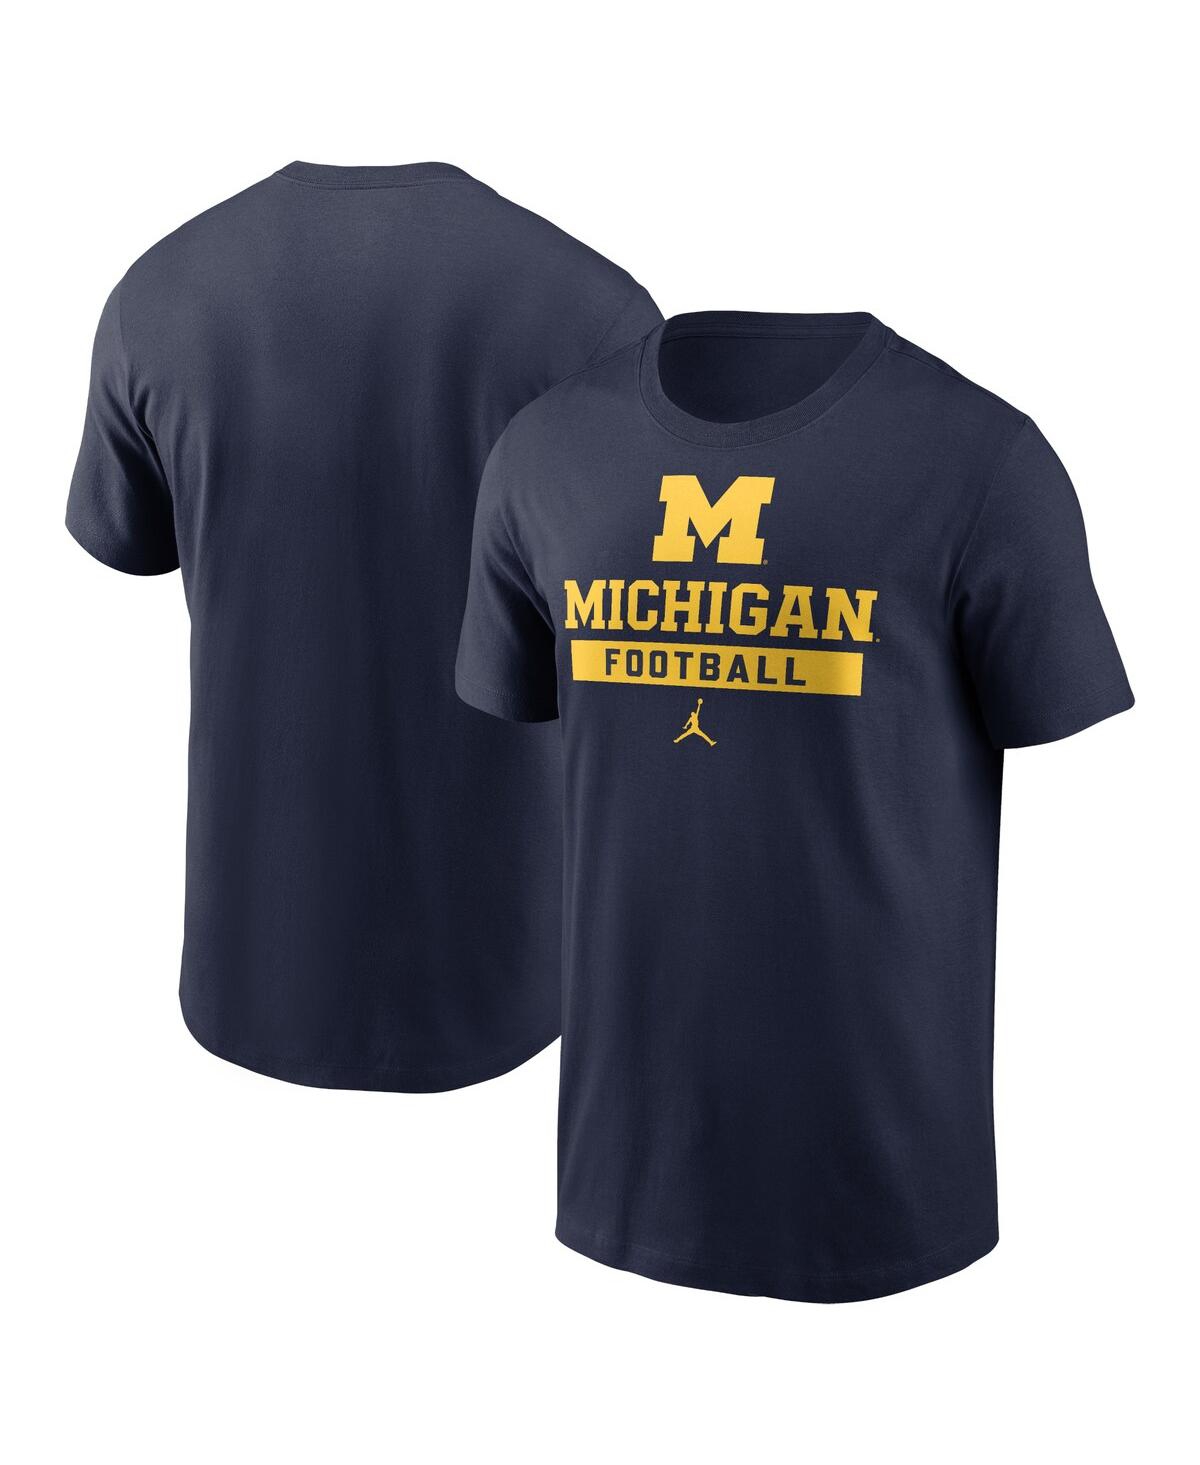 Men's Navy Michigan Wolverines Football T-Shirt - Navy